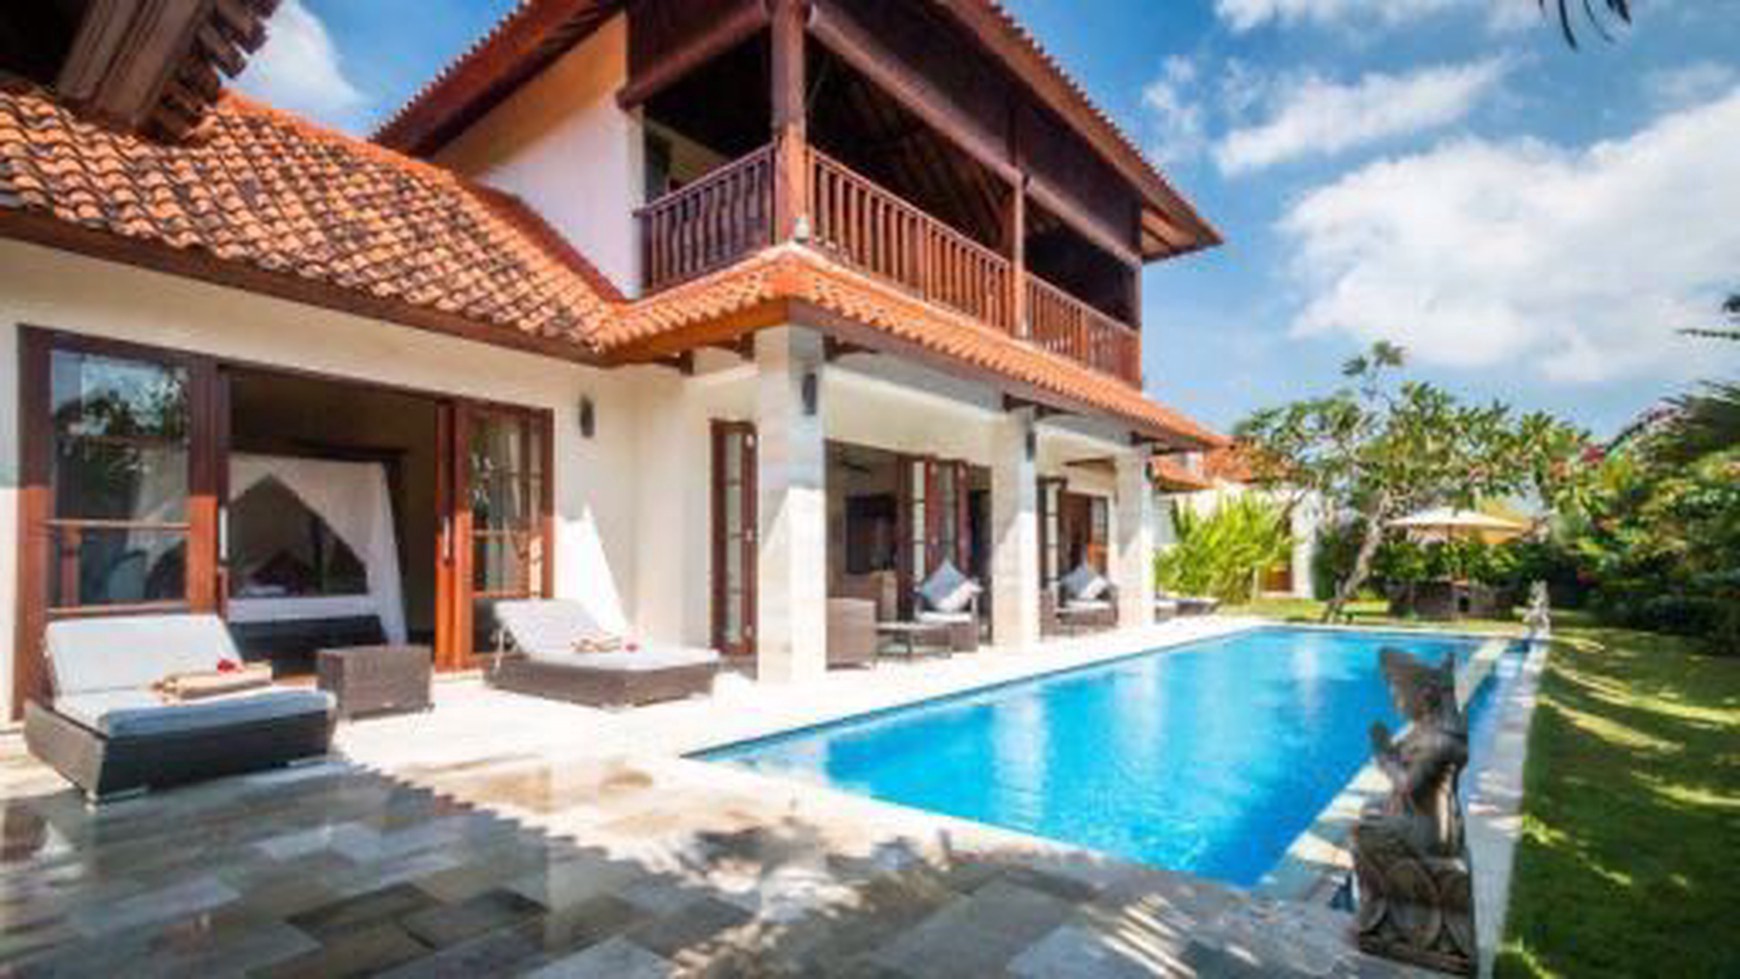 For Rent 2 Bedroom Villa In Umalas